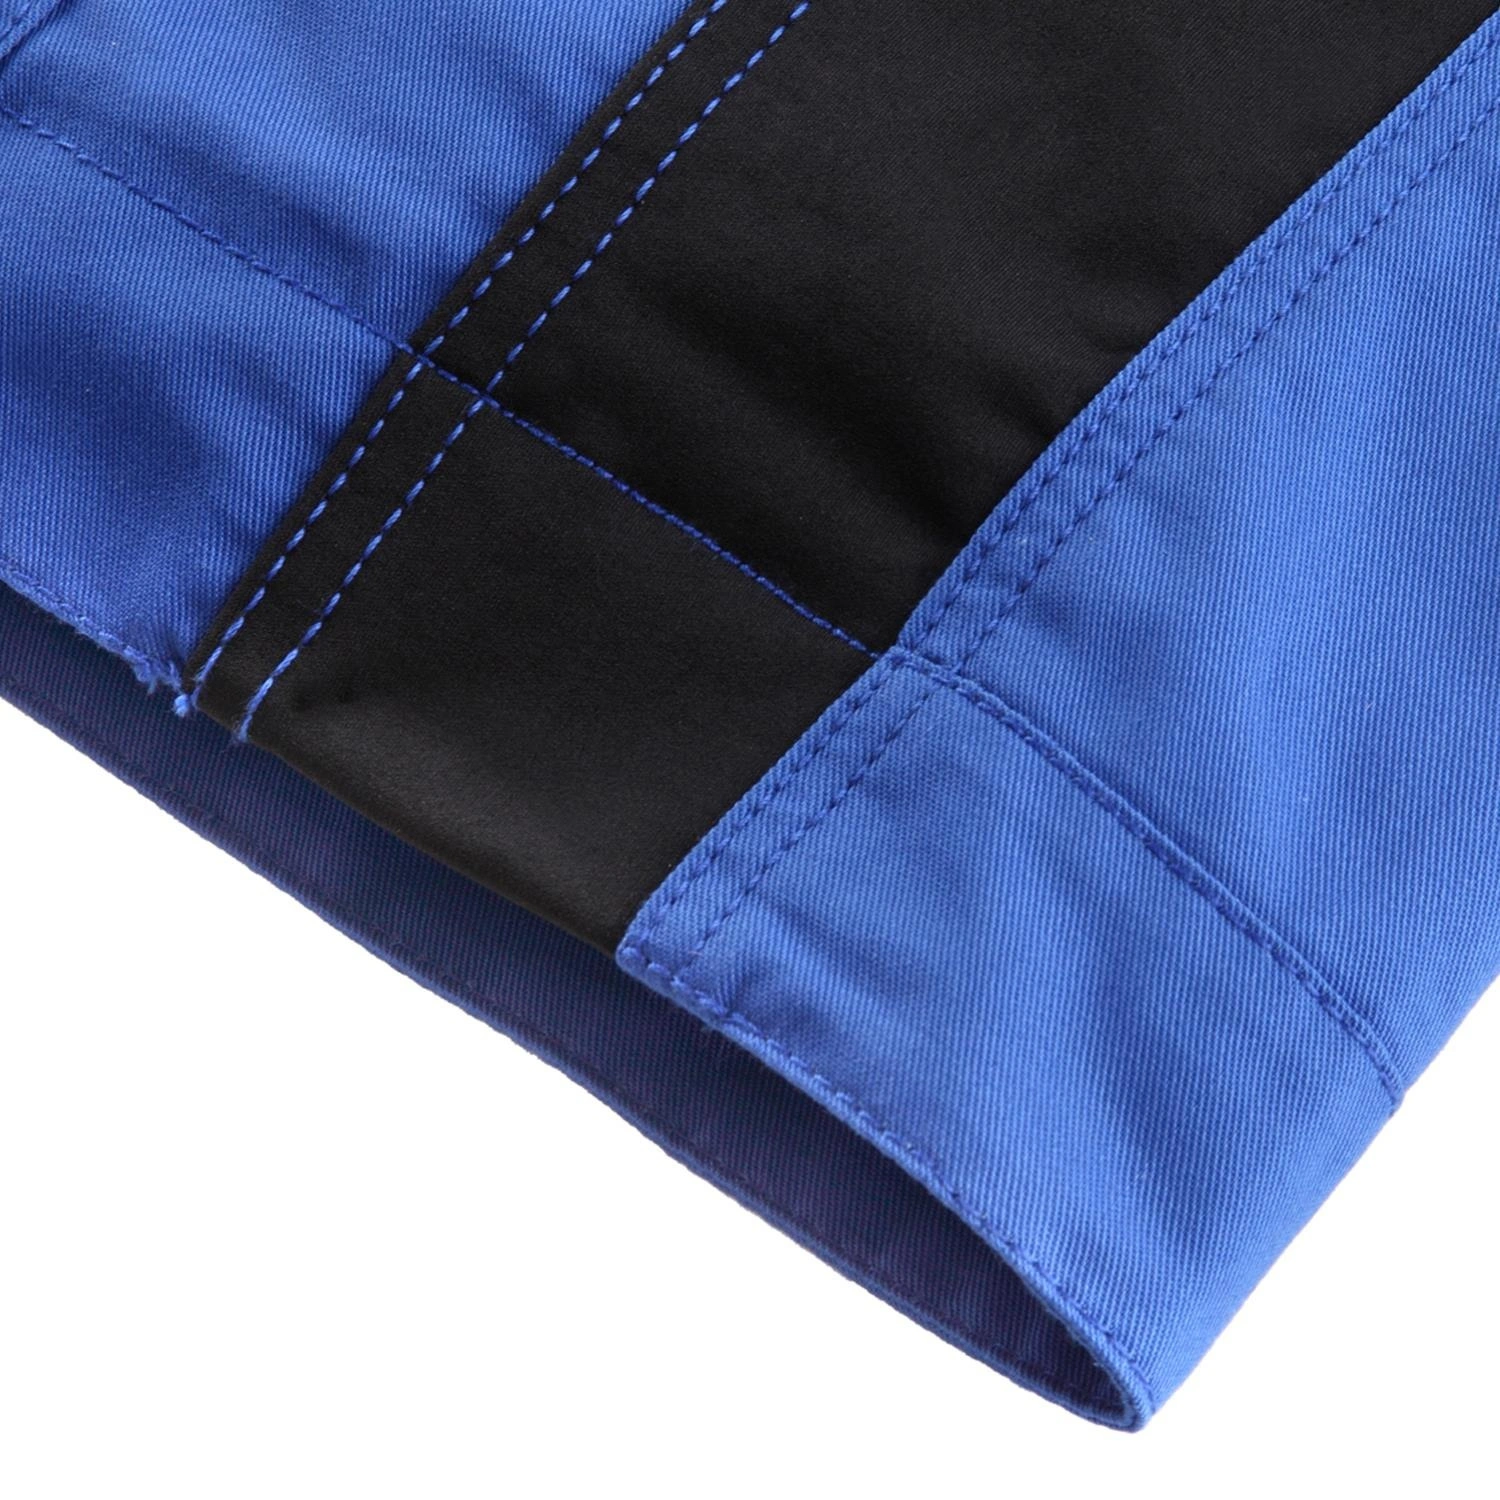 BULLSTAR Arbeitsjacke »EVO«, schwarz/kornblumenblau, Polyester/Baumwolle,  Gr. XL